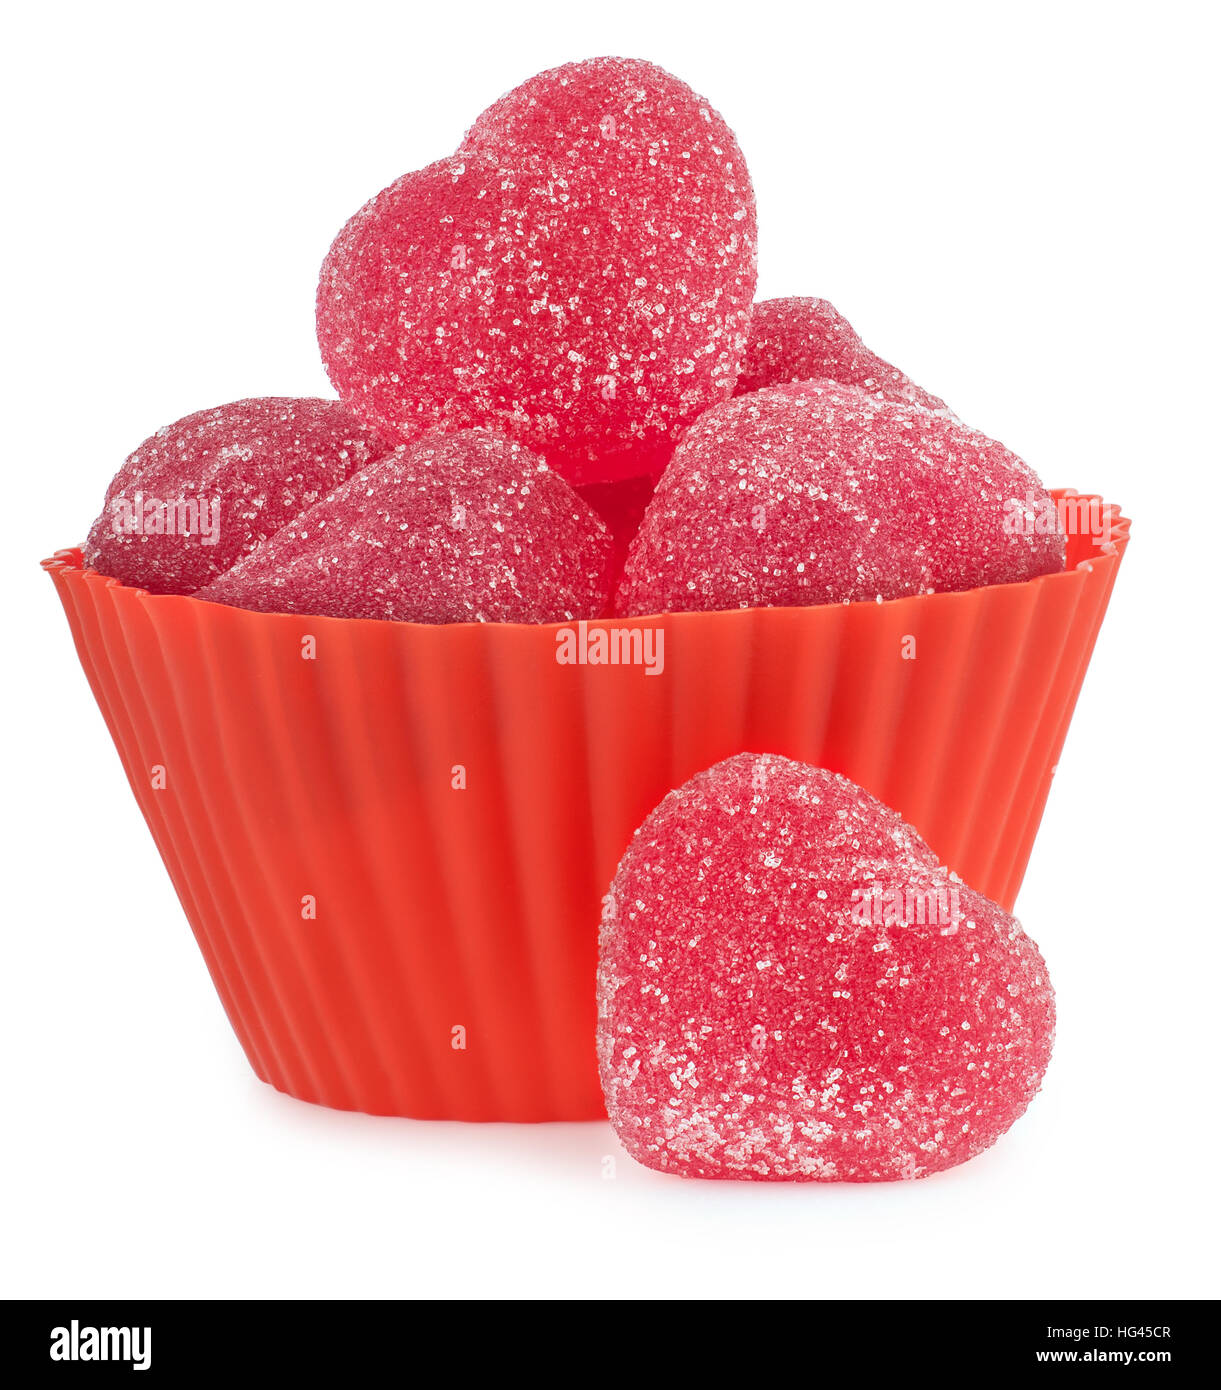 Symbole d'amour coeur rouge gelées avec du sucre dans un bol isolé sur fond blanc Banque D'Images